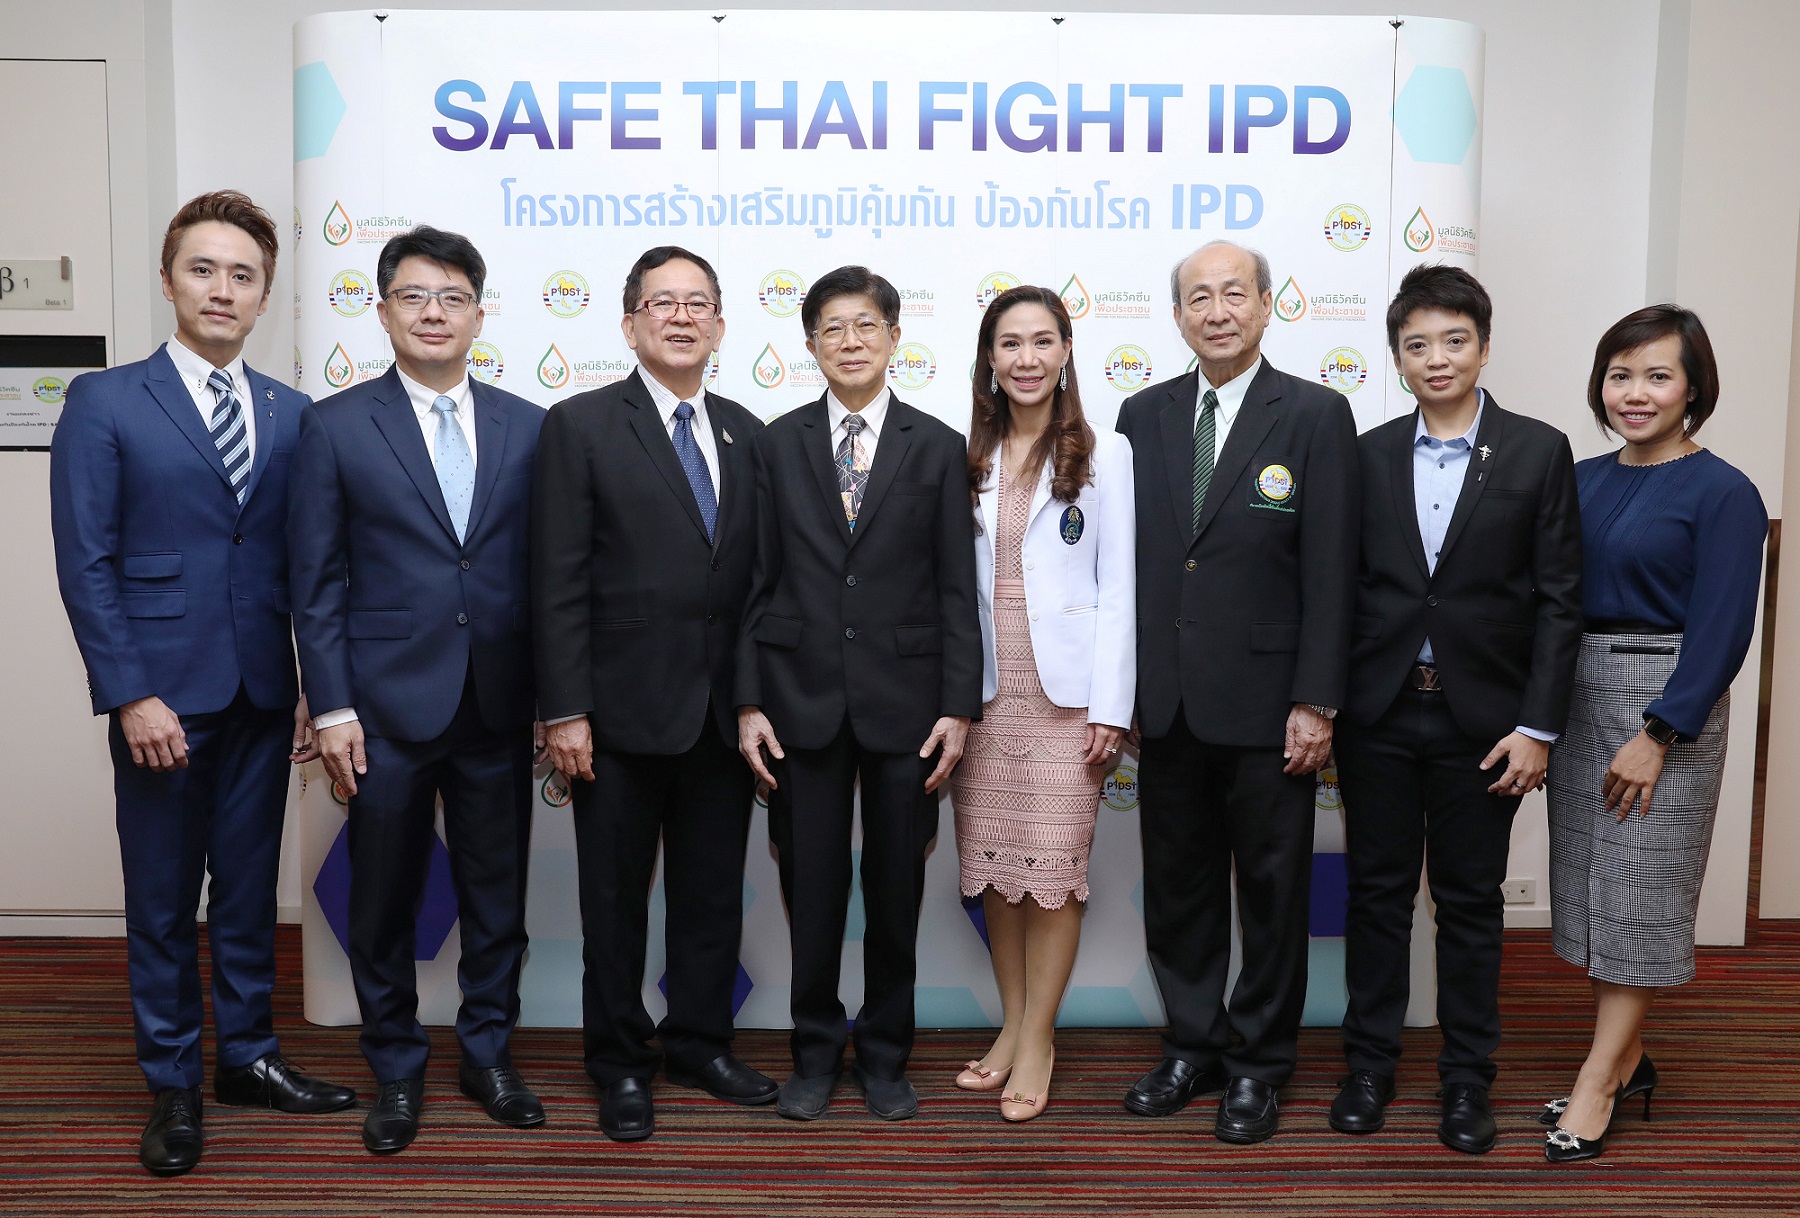 มูลนิธิวัคซีนเพื่อประชาชน ผสาน สมาคมโรคติดเชื้อในเด็กแห่งประเทศไทย ร่วมรณรงค์ ป้องกัน รู้ทันโรค IPD และปอดบวม